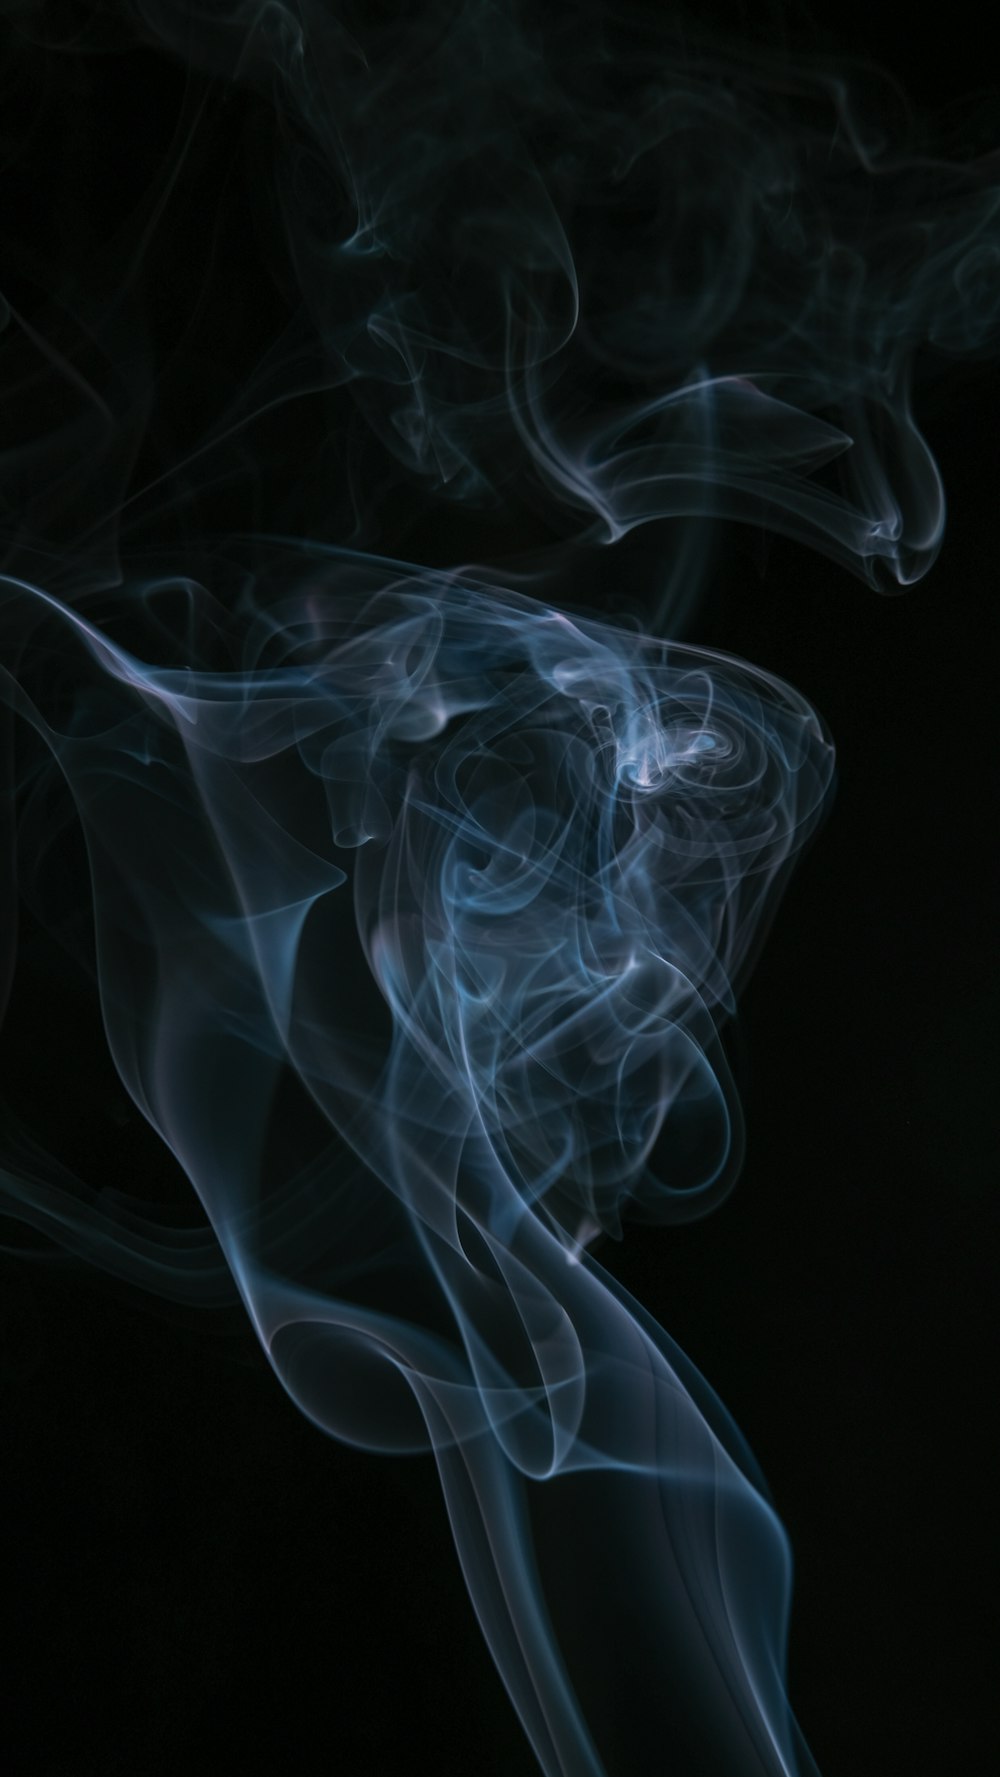 white smoke on black background photo – Free Grey Image on Unsplash